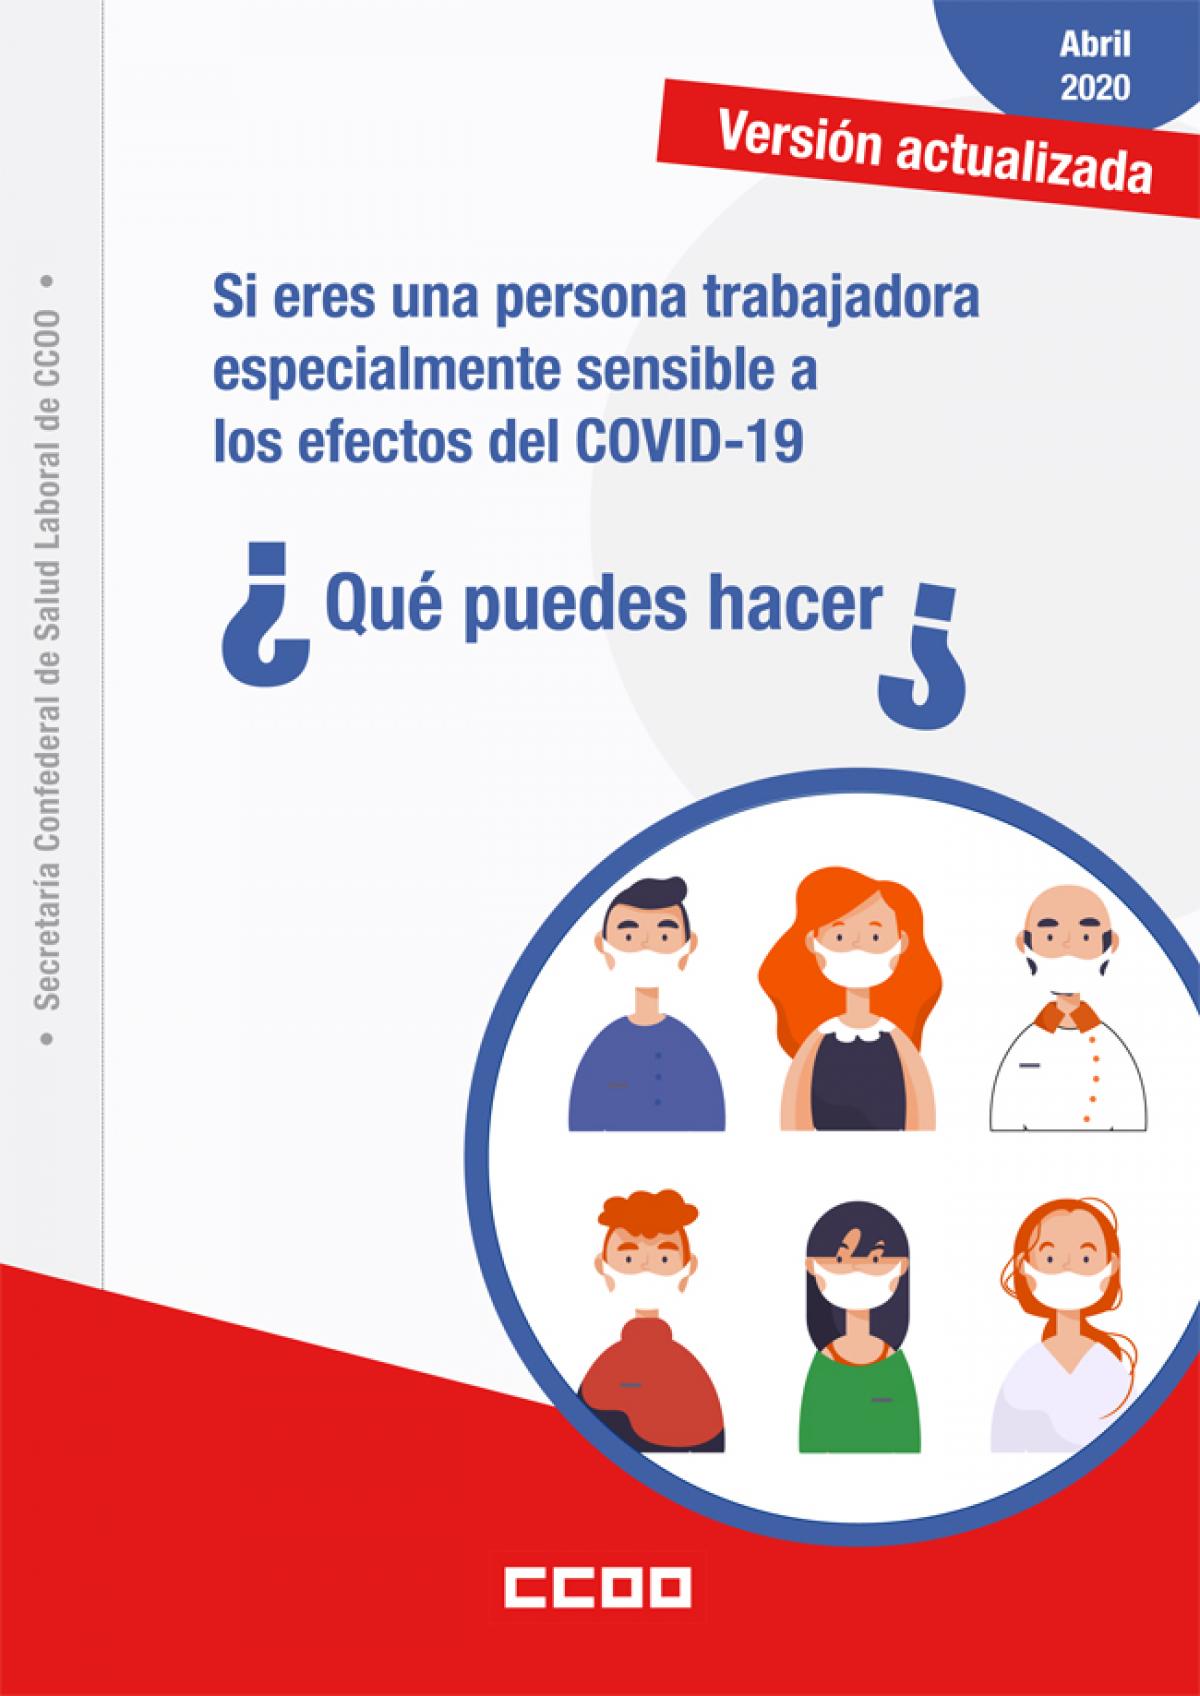 Si eres una persona trabajadora especialmente sensible a los efectos del COVID-19, ¿qué puedes hacer?